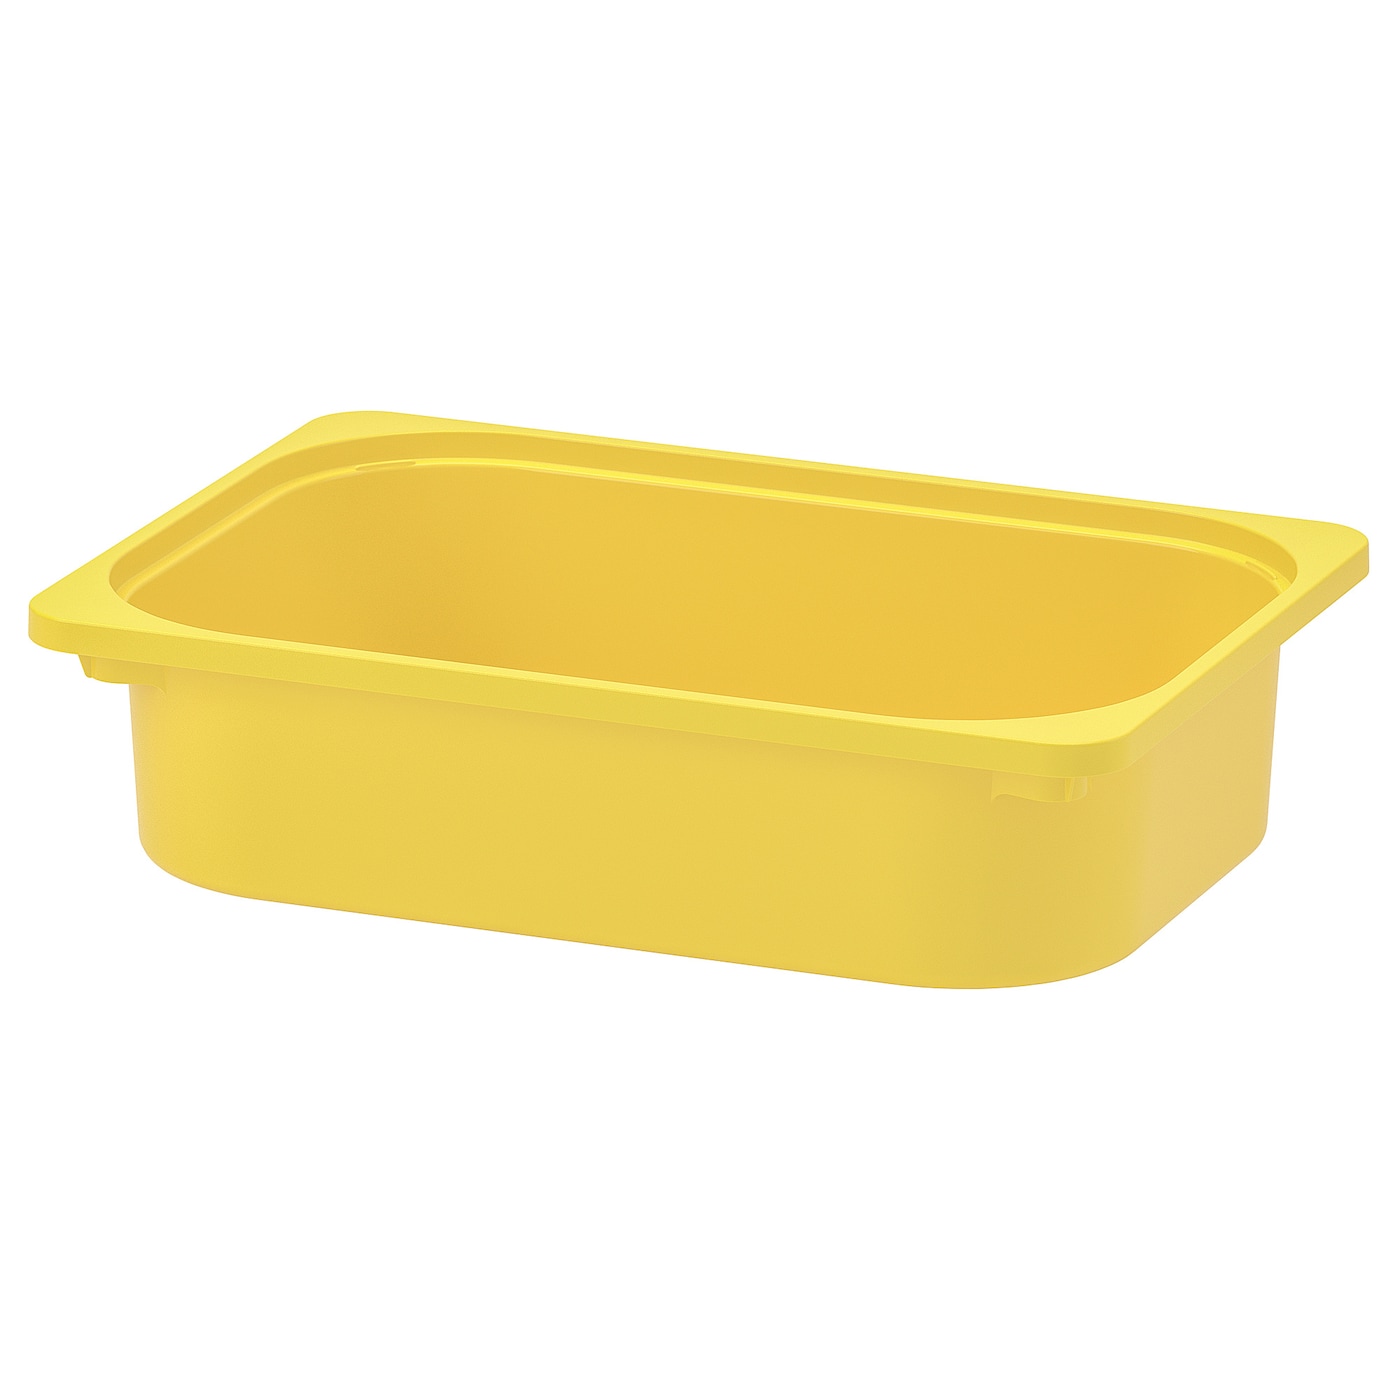 Ящик для хранения игрушек - TROFAST IKEA/ ТРУФАСТ ИКЕА, 42x30x10 см, желтый